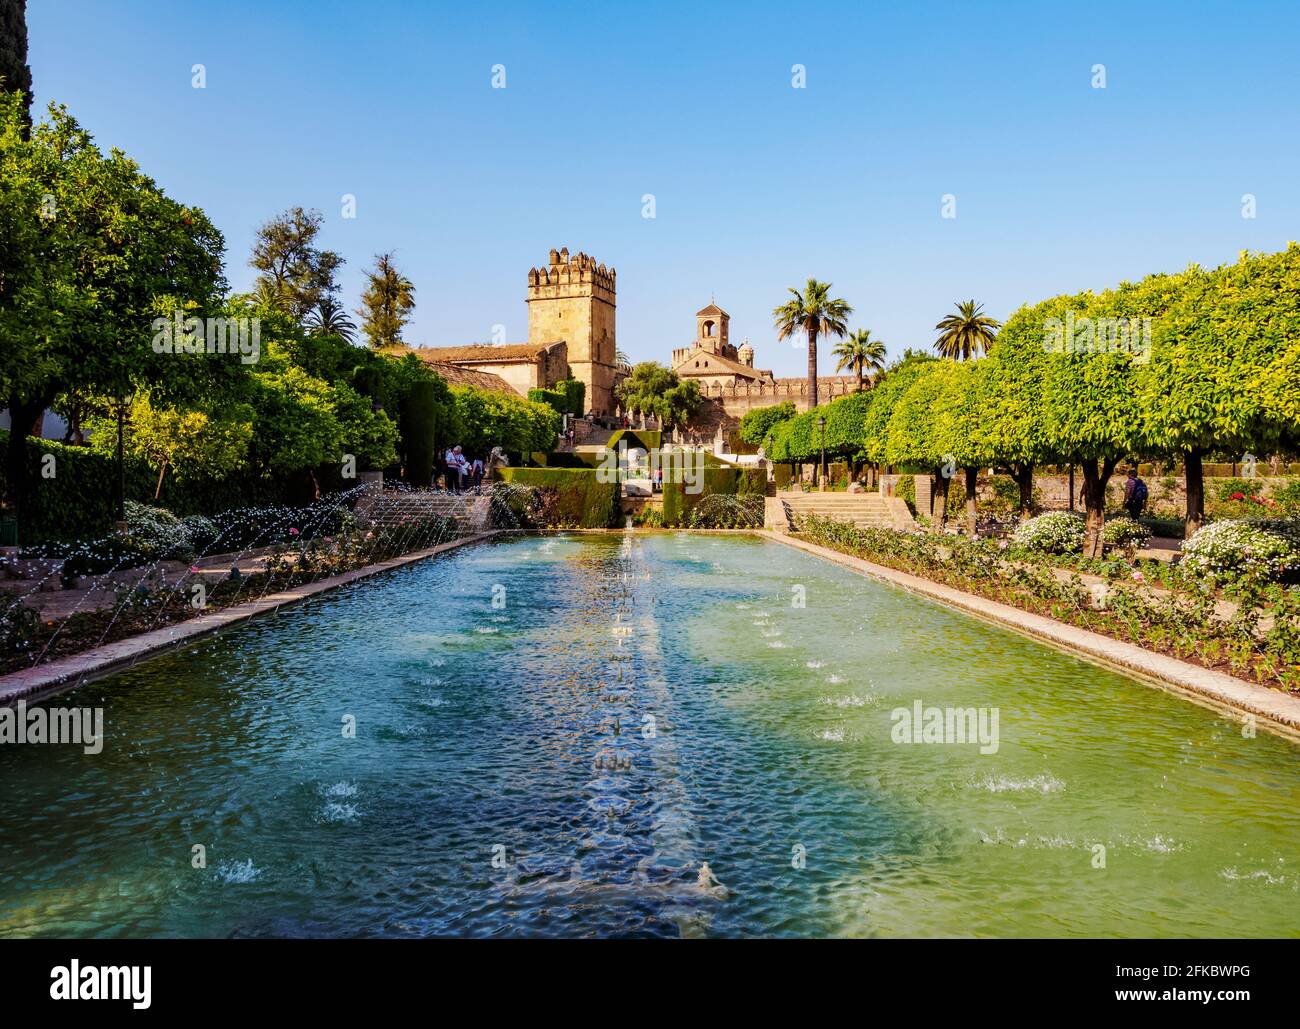 Gärten von Alcazar de los Reyes Cristianos (Alcazar der christlichen Könige), UNESCO-Weltkulturerbe, Cordoba, Andalusien, Spanien, Europa Stockfoto